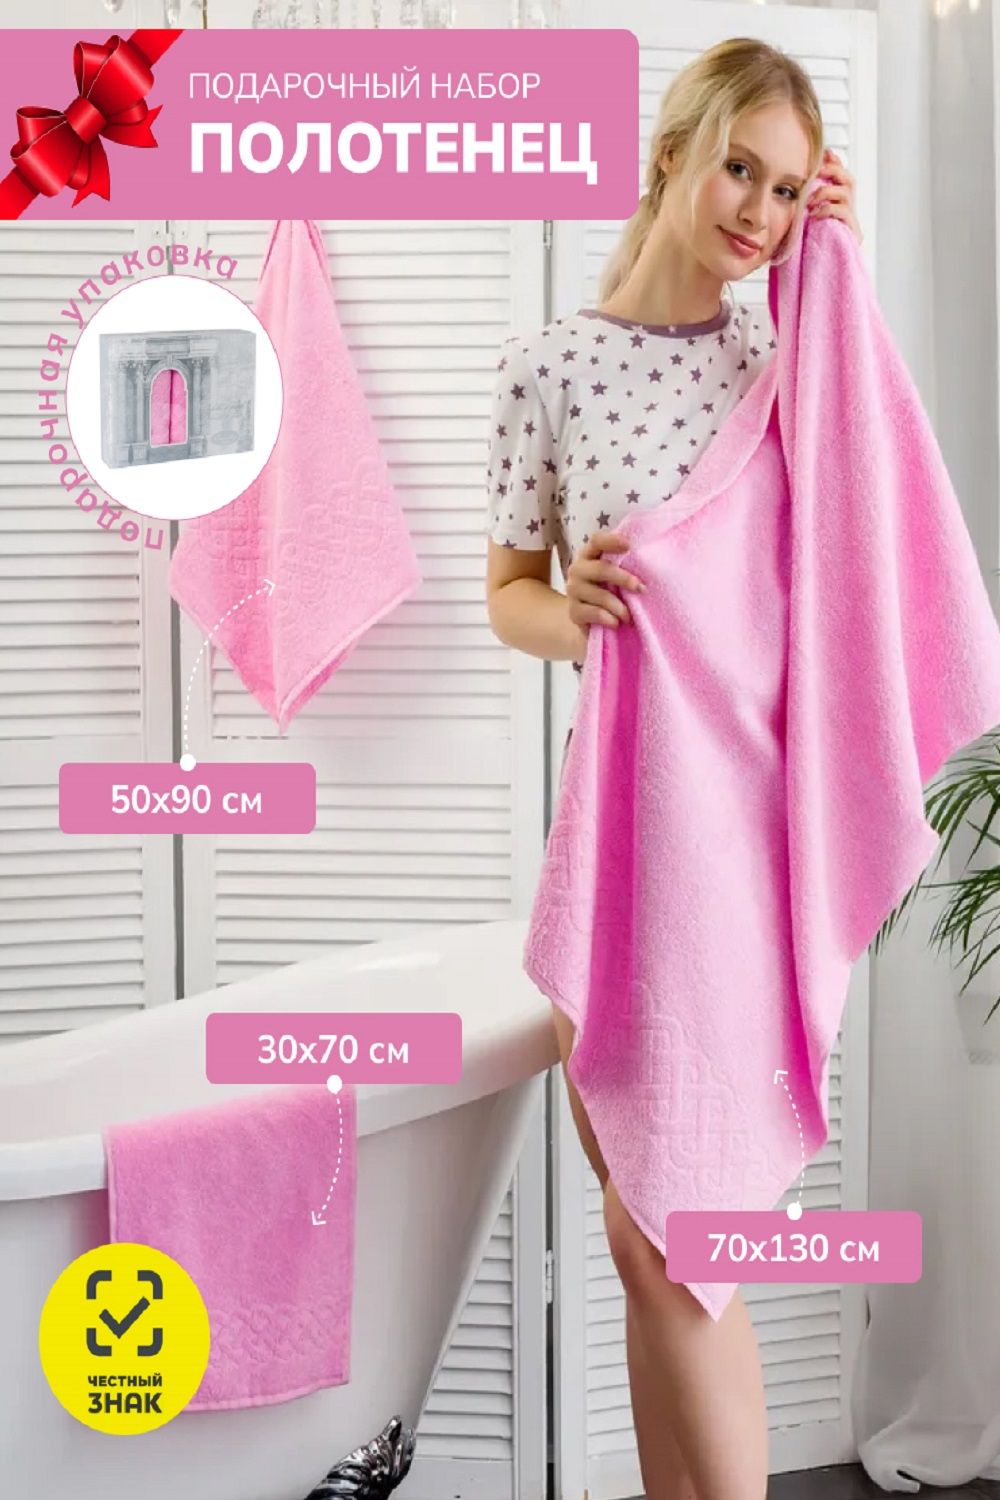 Набор махровых полотенец в подарочном коробе Плэйт - розовый